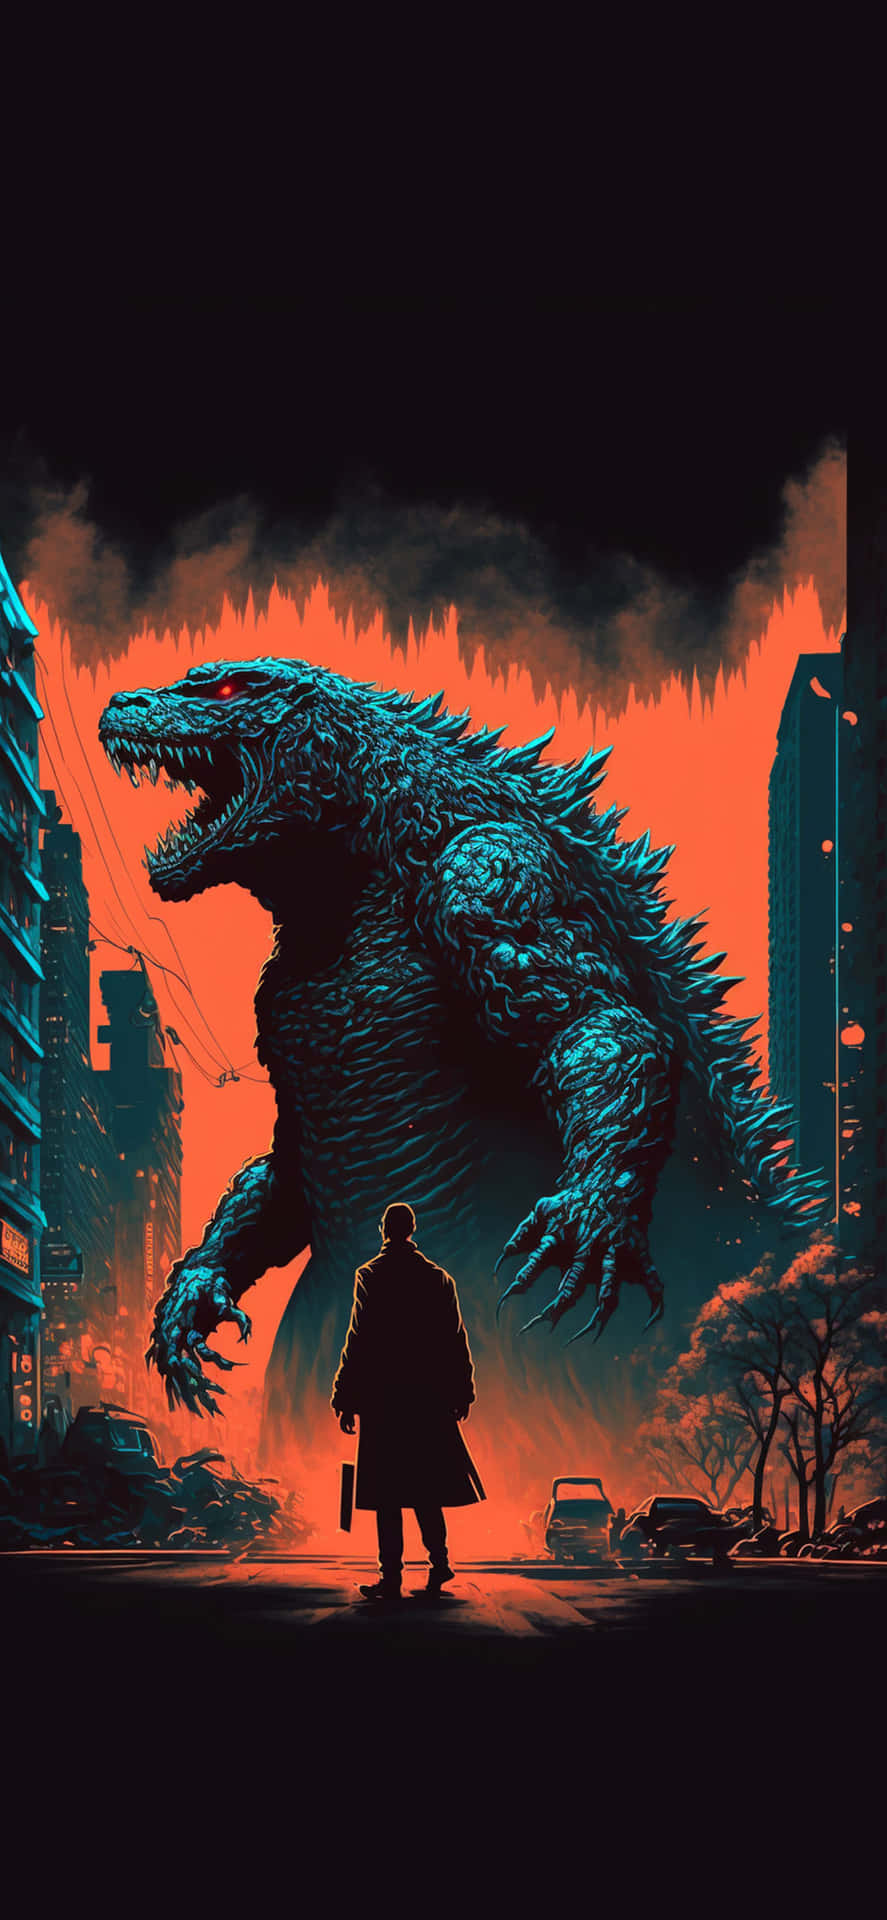 Godzillakonst I Stad Med Silhuettbild På Man